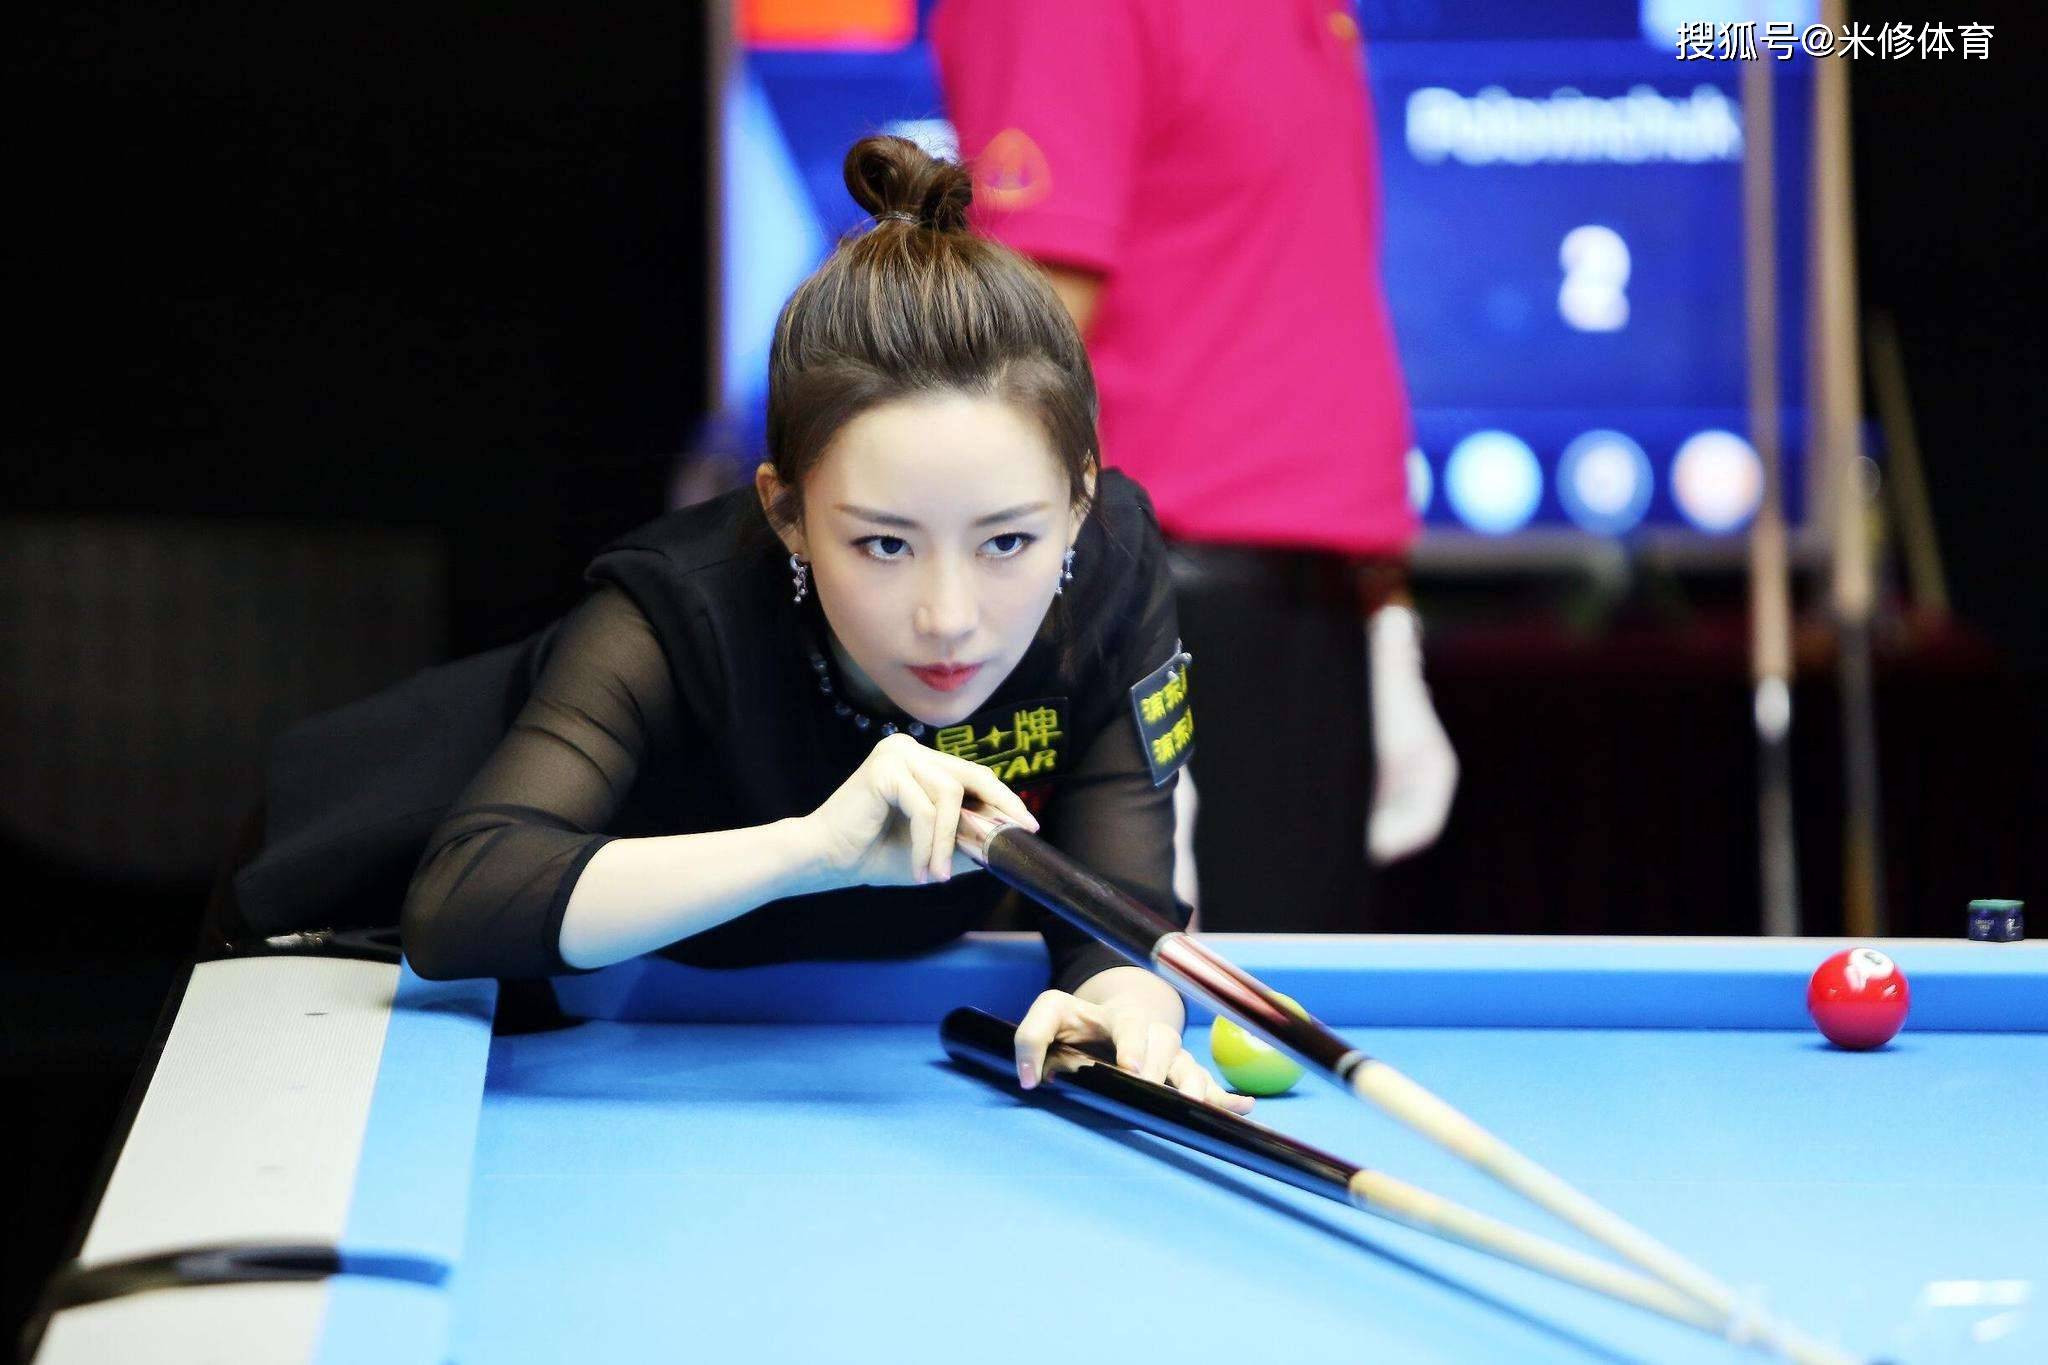 潘晓婷是山东济宁人,是中国台球界第一位获得世界锦标赛冠军的选手,10